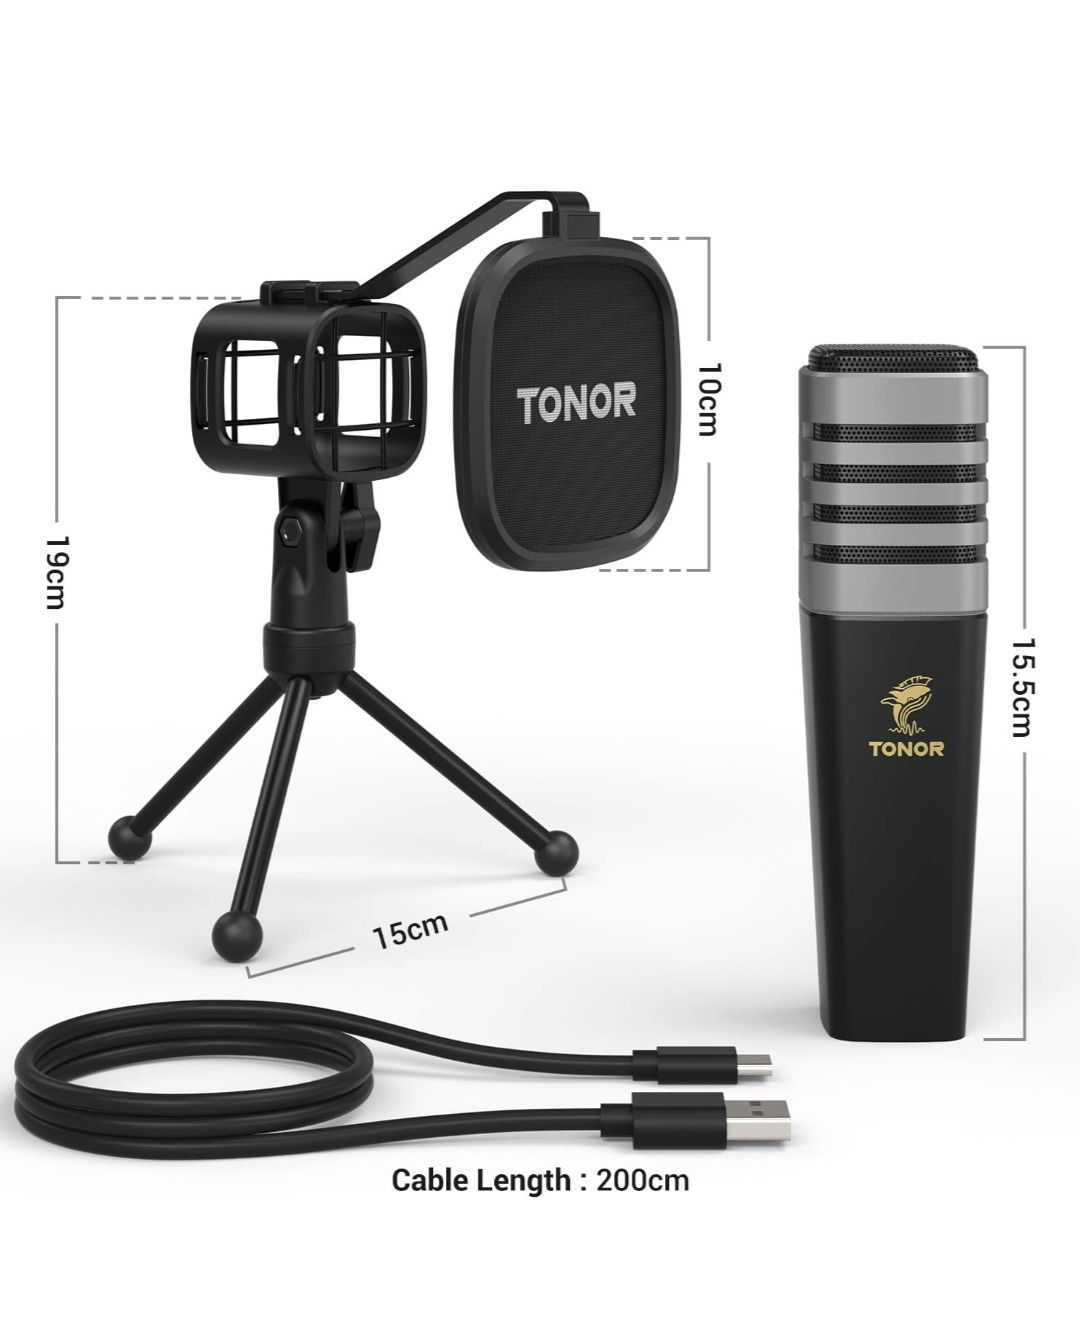 Microfone USB PC Gaming/Consolas com suporte TONOR